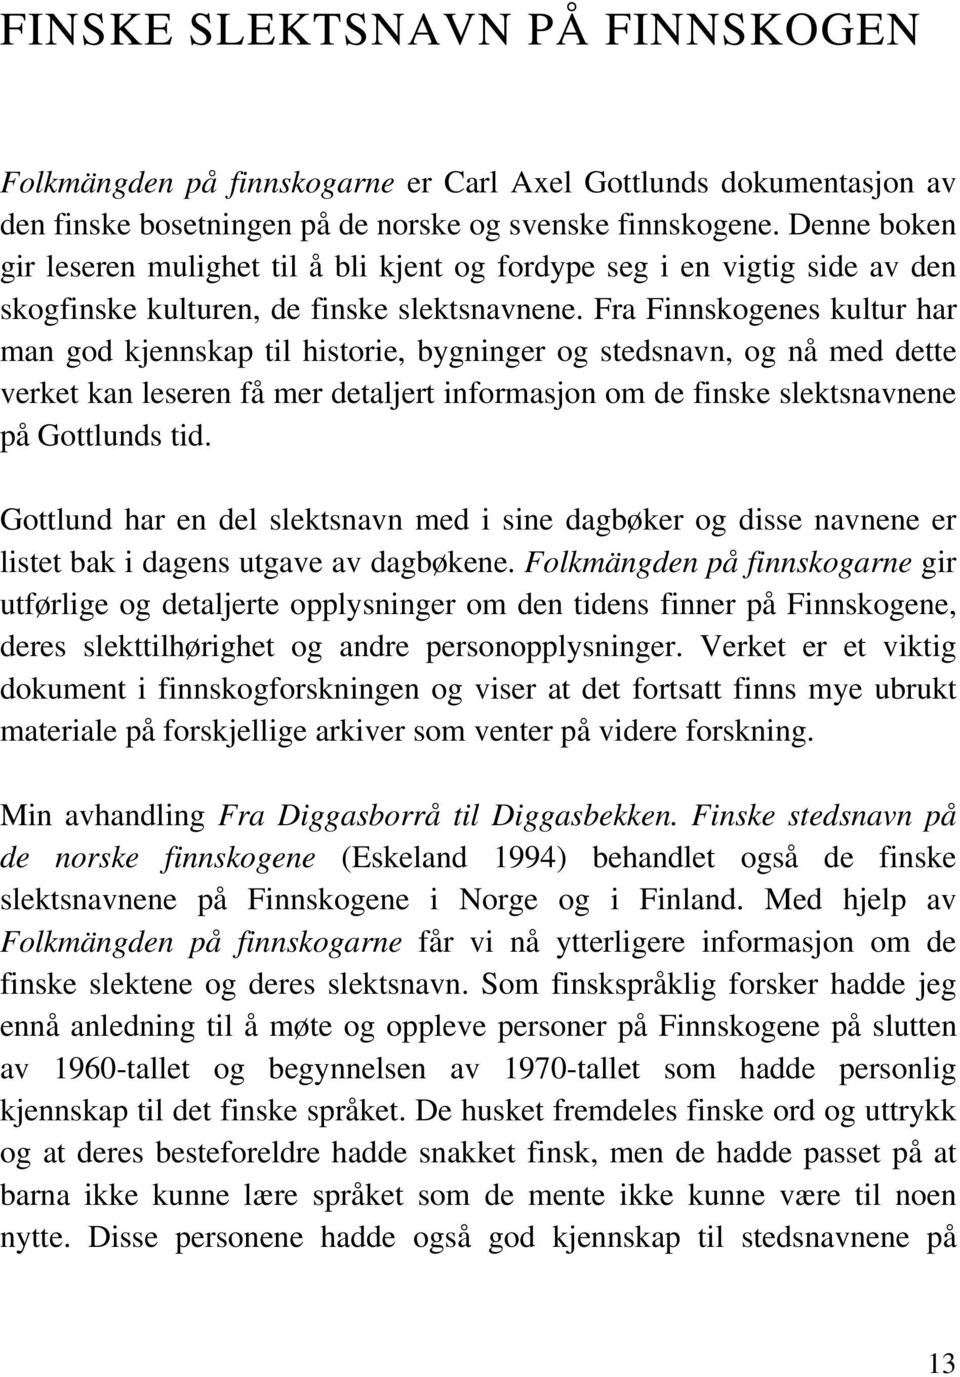 Fra Finnskogenes kultur har man god kjennskap til historie, bygninger og stedsnavn, og nå med dette verket kan leseren få mer detaljert informasjon om de finske slektsnavnene på Gottlunds tid.